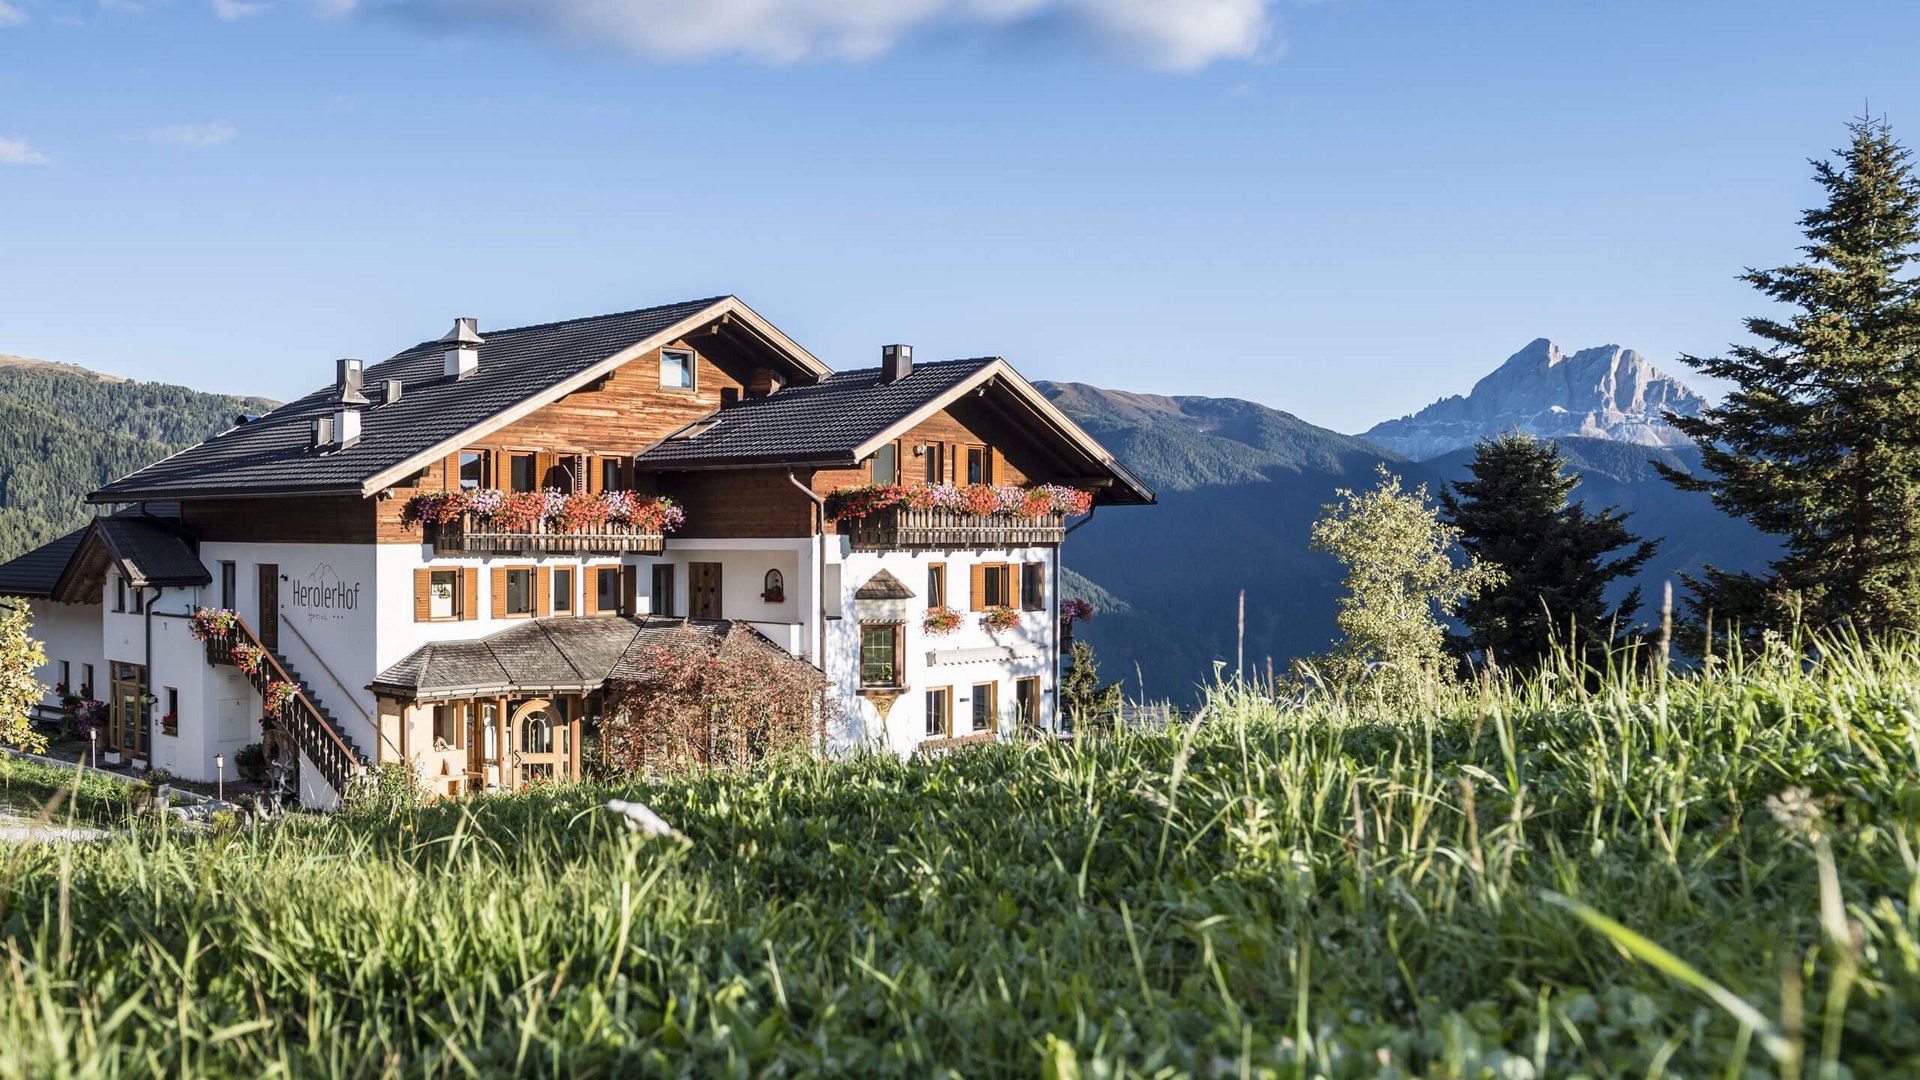 Le vostre vacanze da sogno alle Dolomiti!